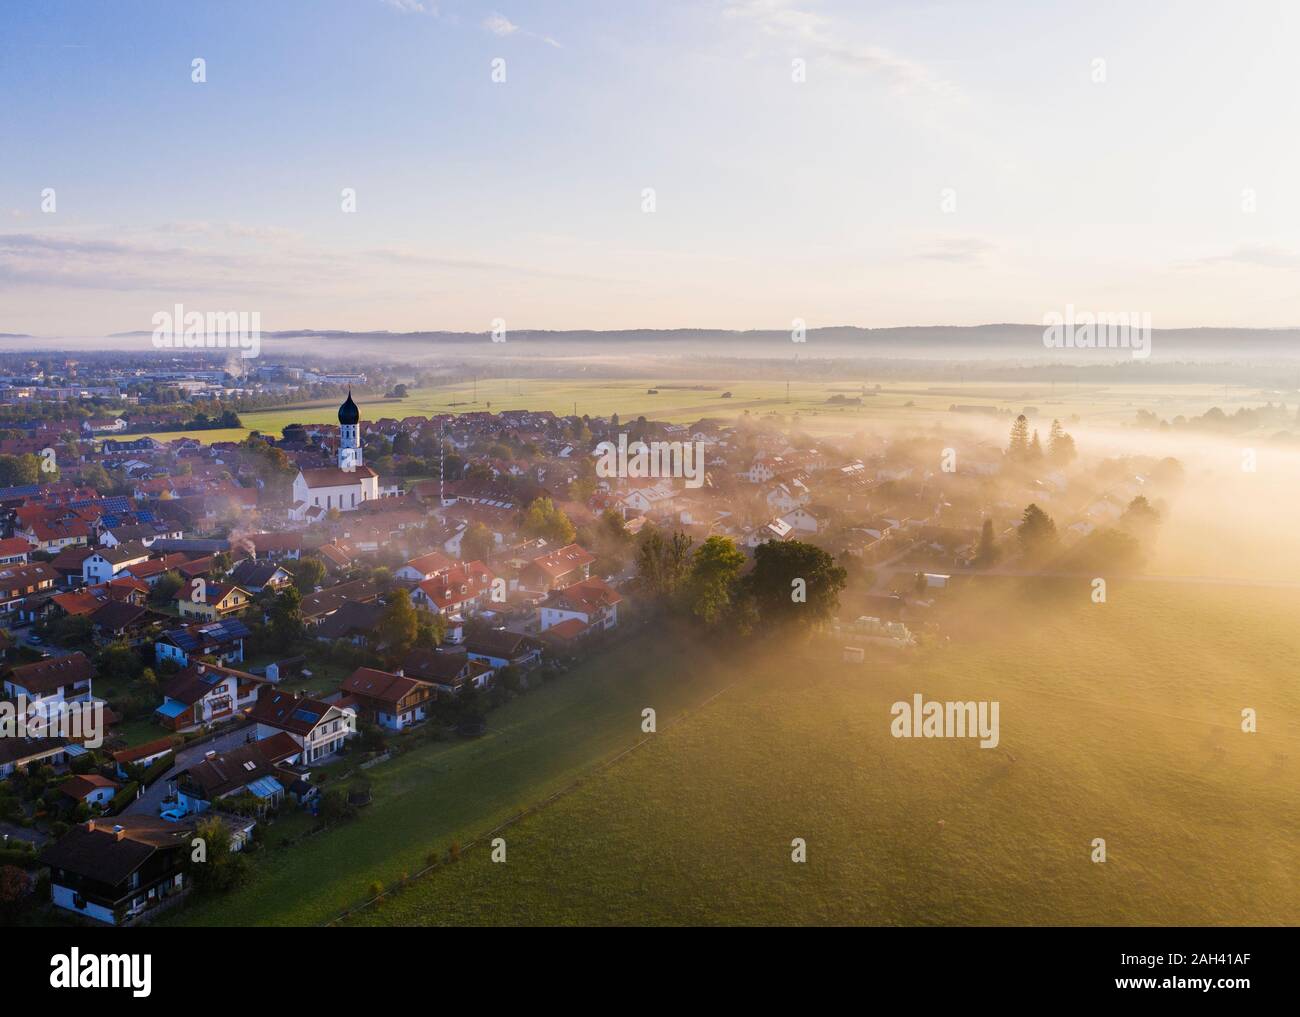 Alemania, Baviera, Geretsried, vista aérea del campo ciudad envuelta en niebla matutina Foto de stock